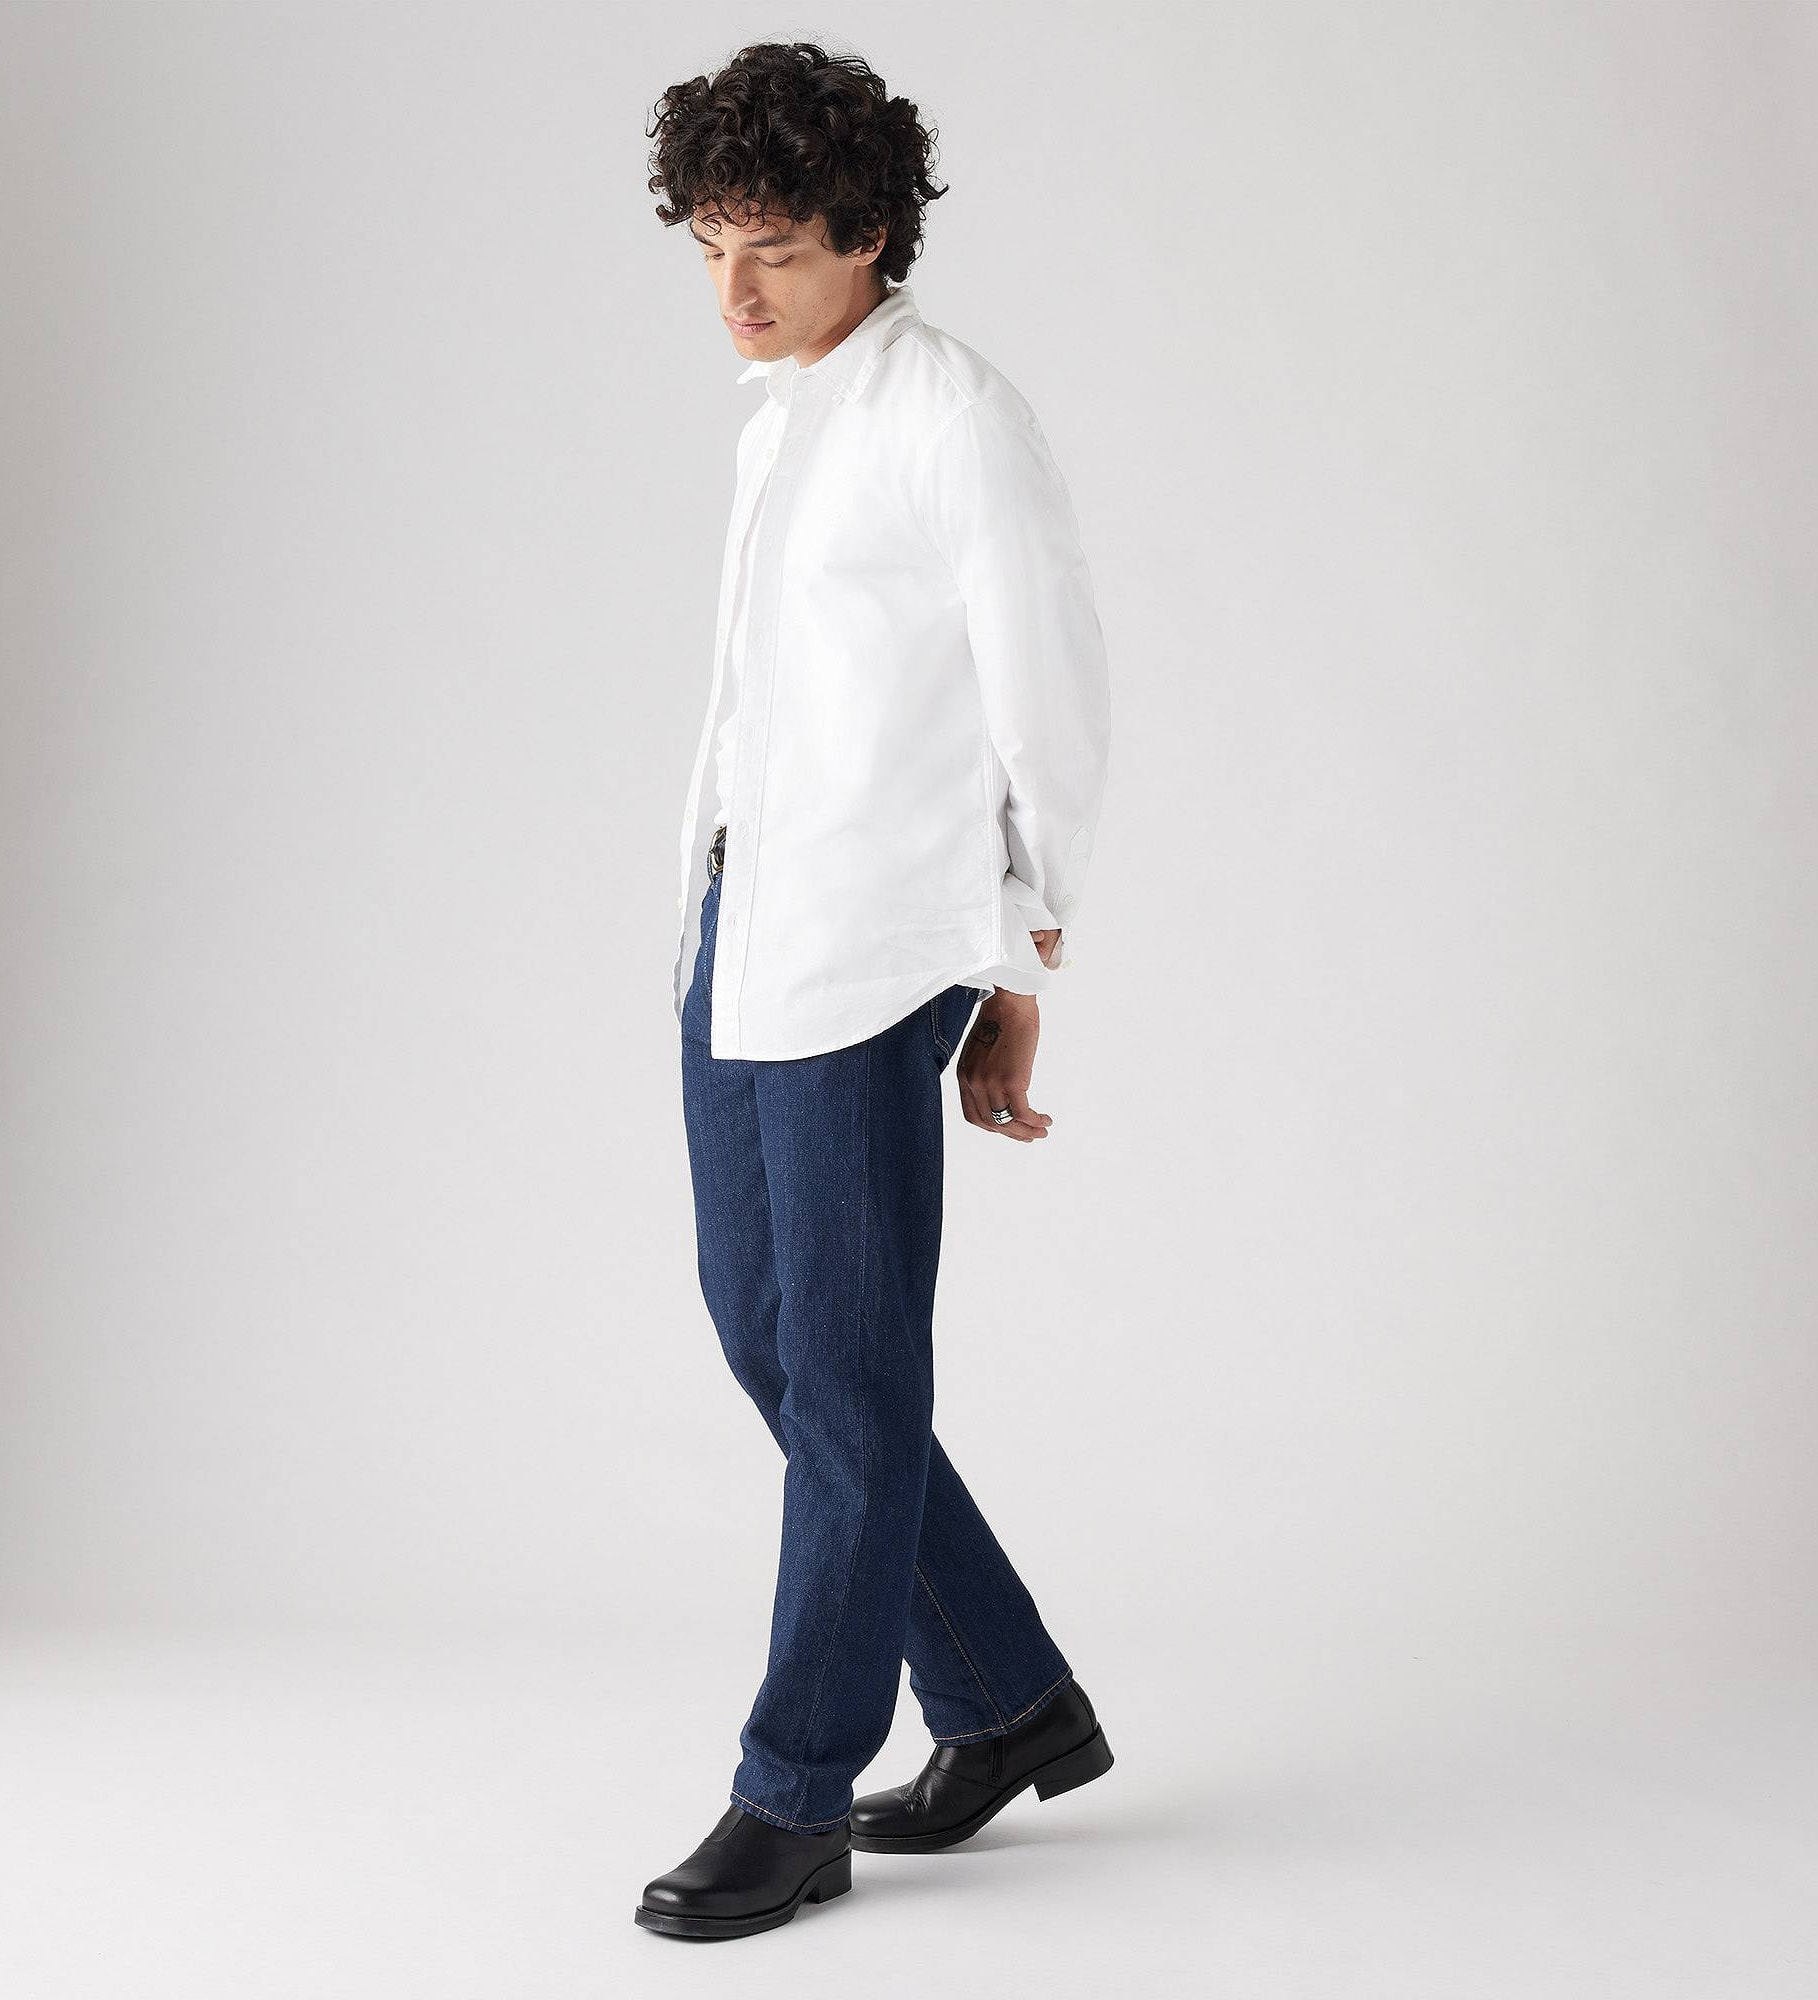 501® Levi's® Original Jeans - Levi's Jeans, Jackets & Clothing